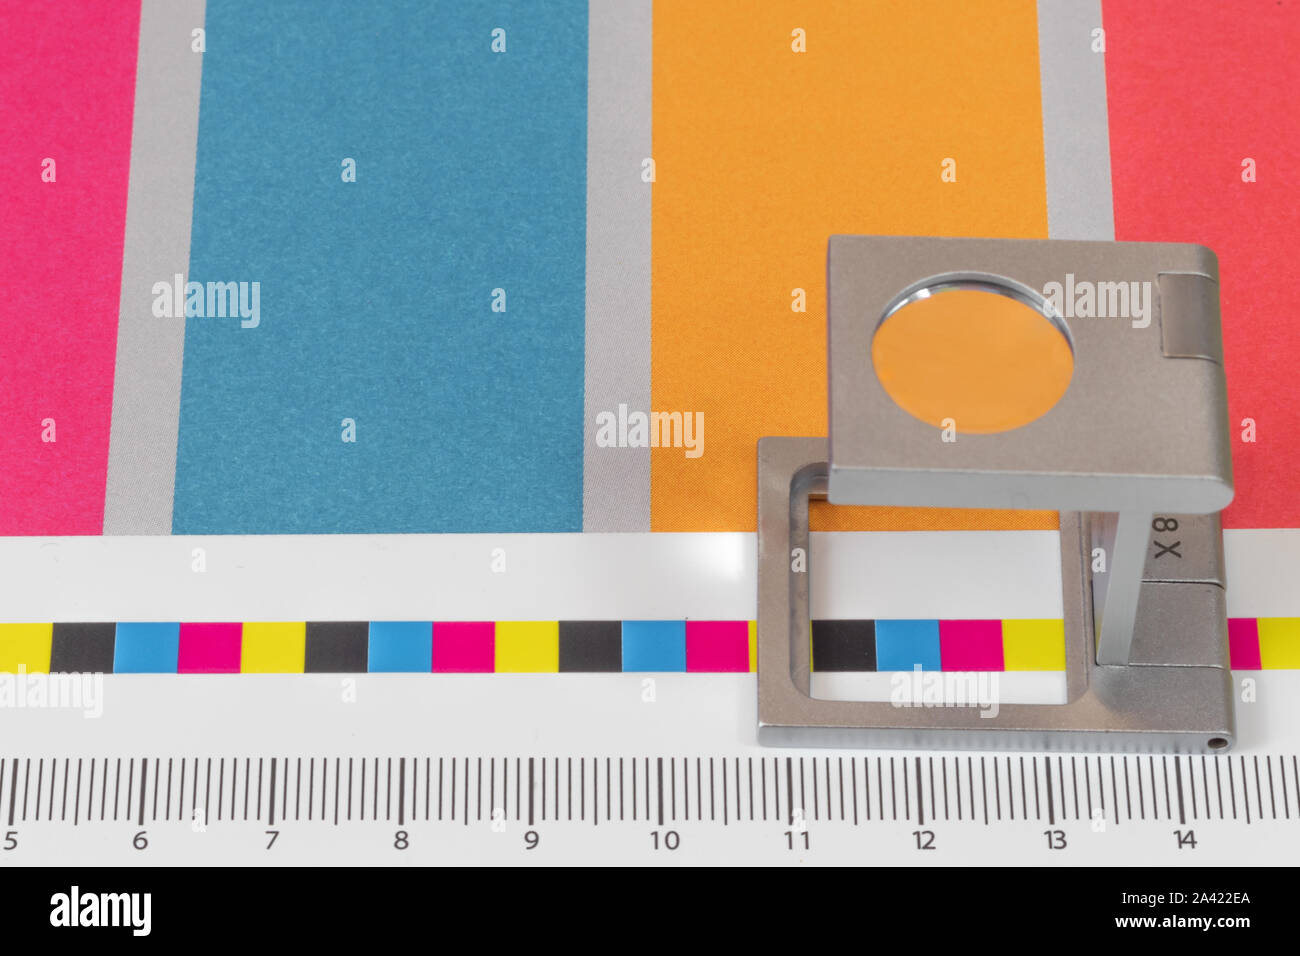 Argento lente di ingrandimento permanente sulla stampa di prova, sfondo colorato. Loupe stampa offset a foglio stampato con i colori di base barre di controllo. Foto Stock